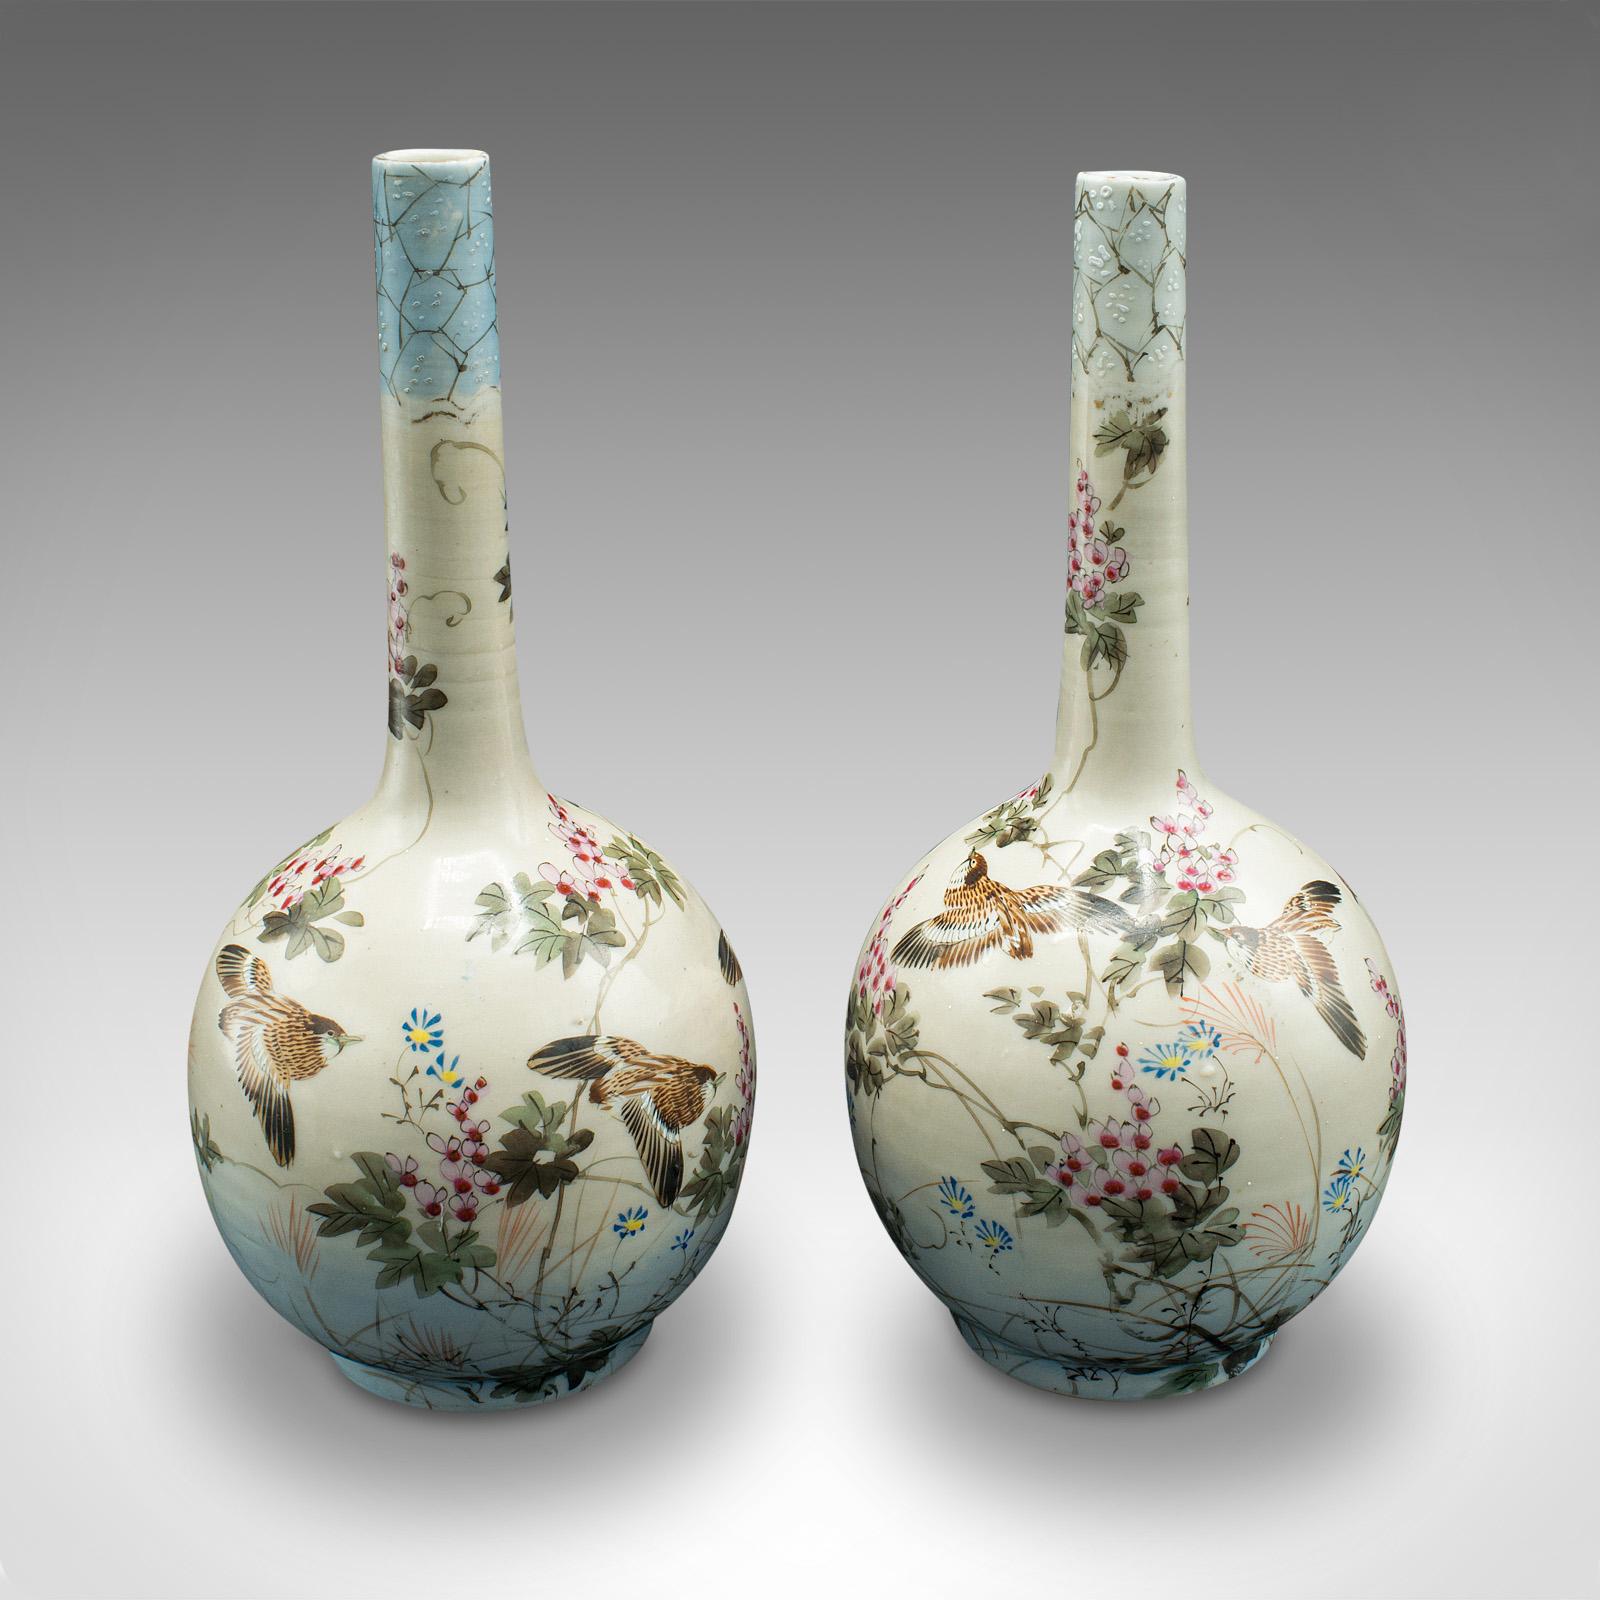 Il s'agit d'une paire de vases anciens à tige unique. Urne japonaise en céramique peinte à la main, datant de la période victorienne, vers 1880.

Décoration délicatement peinte à la main du début de la période Meiji
Présentant une patine